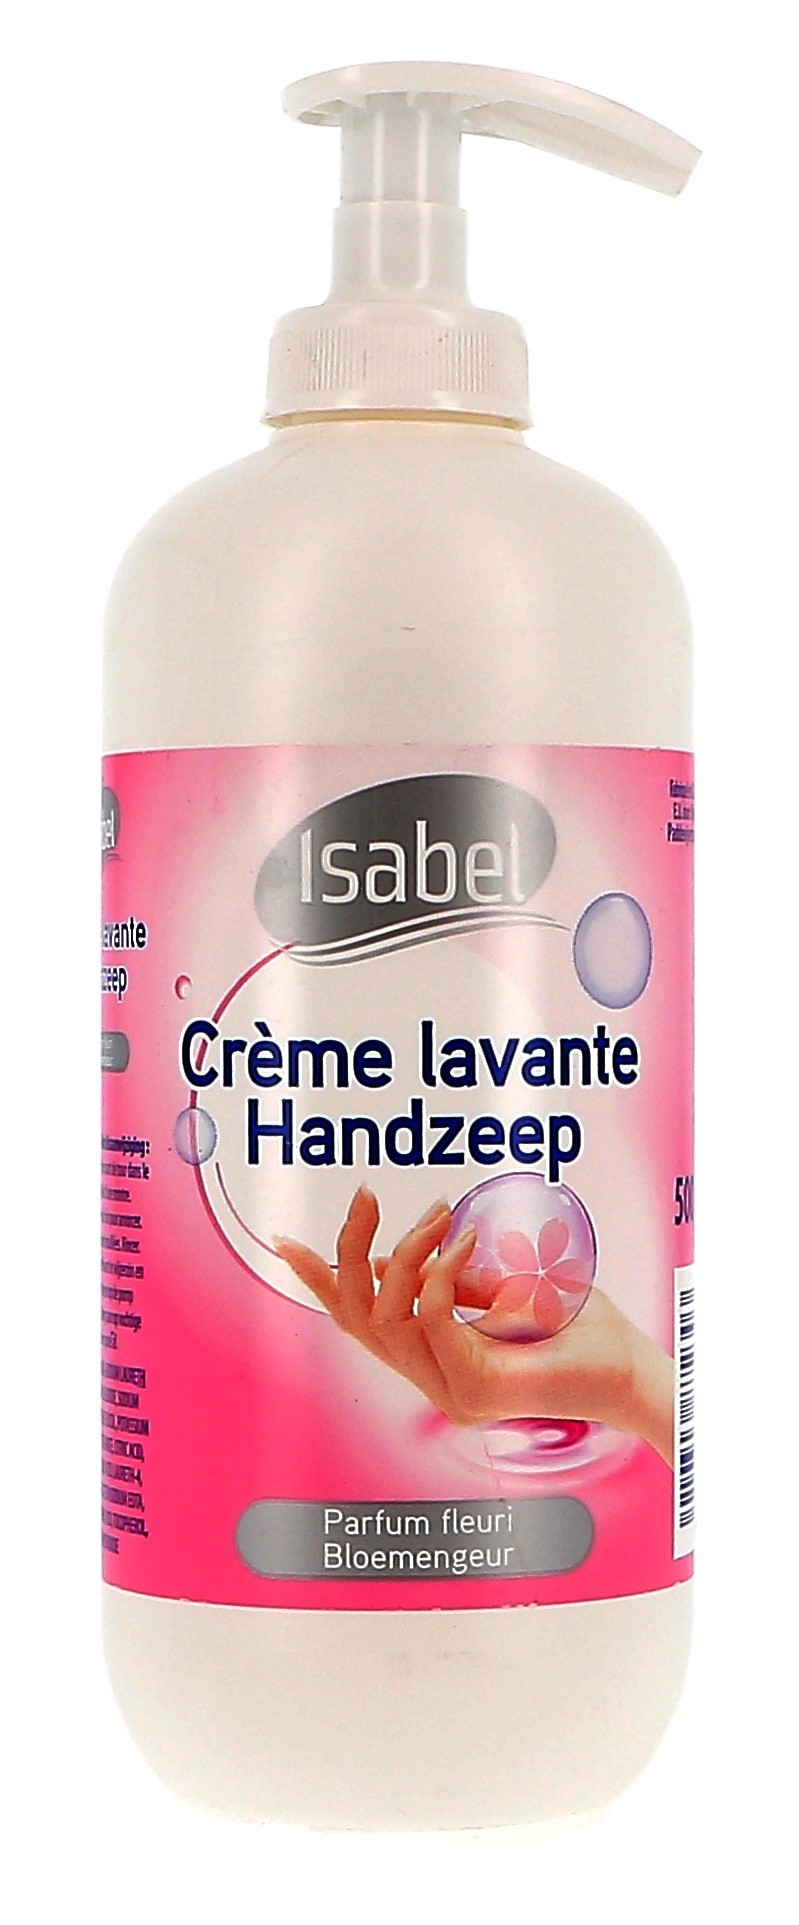 Isabel Handzeep + pomp 500ml (Handafwasproducten)